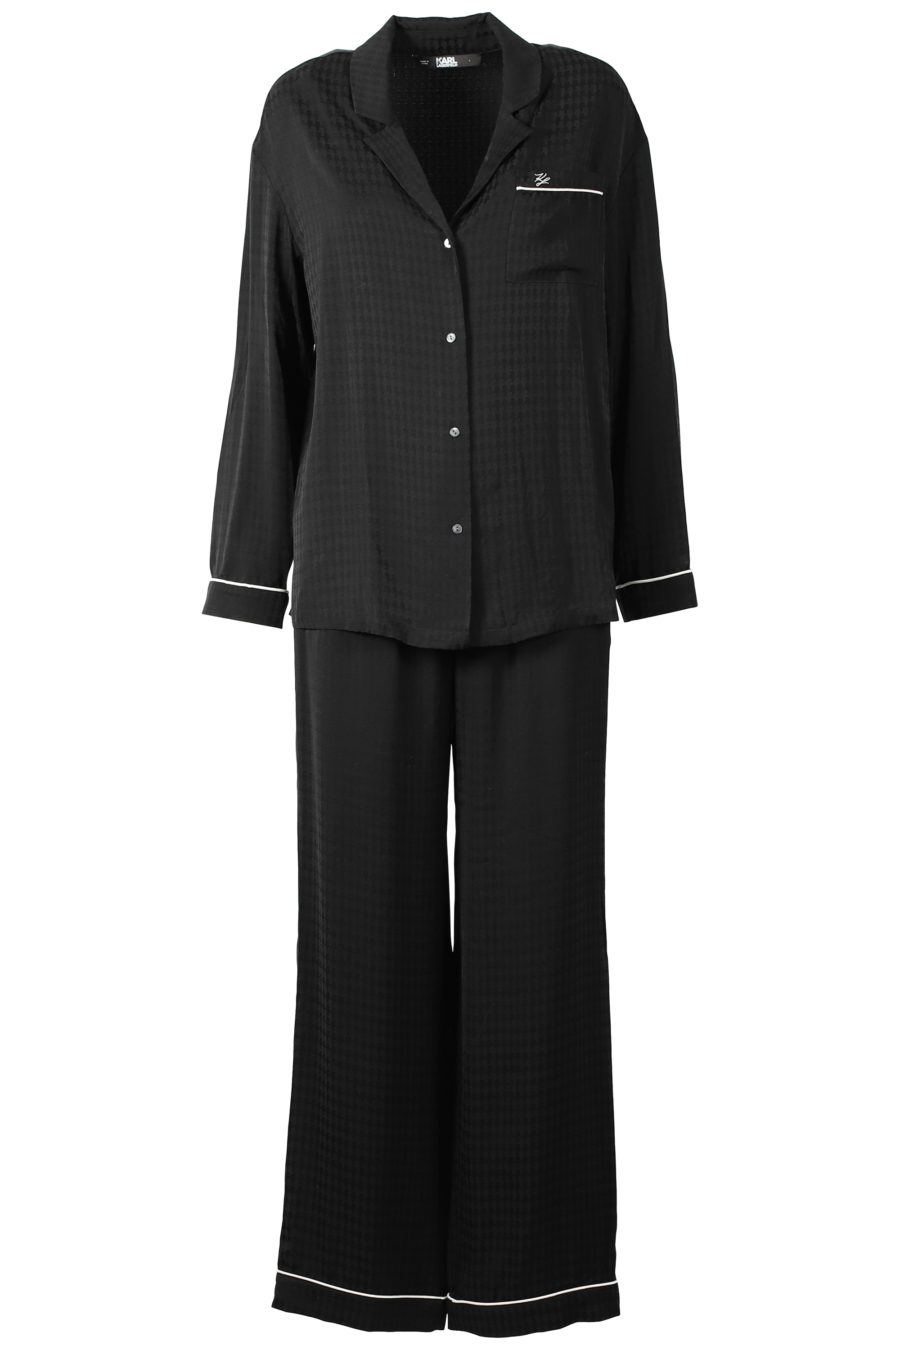 Schwarzer Pyjama-Geschenkset Kameo - IMG 3192